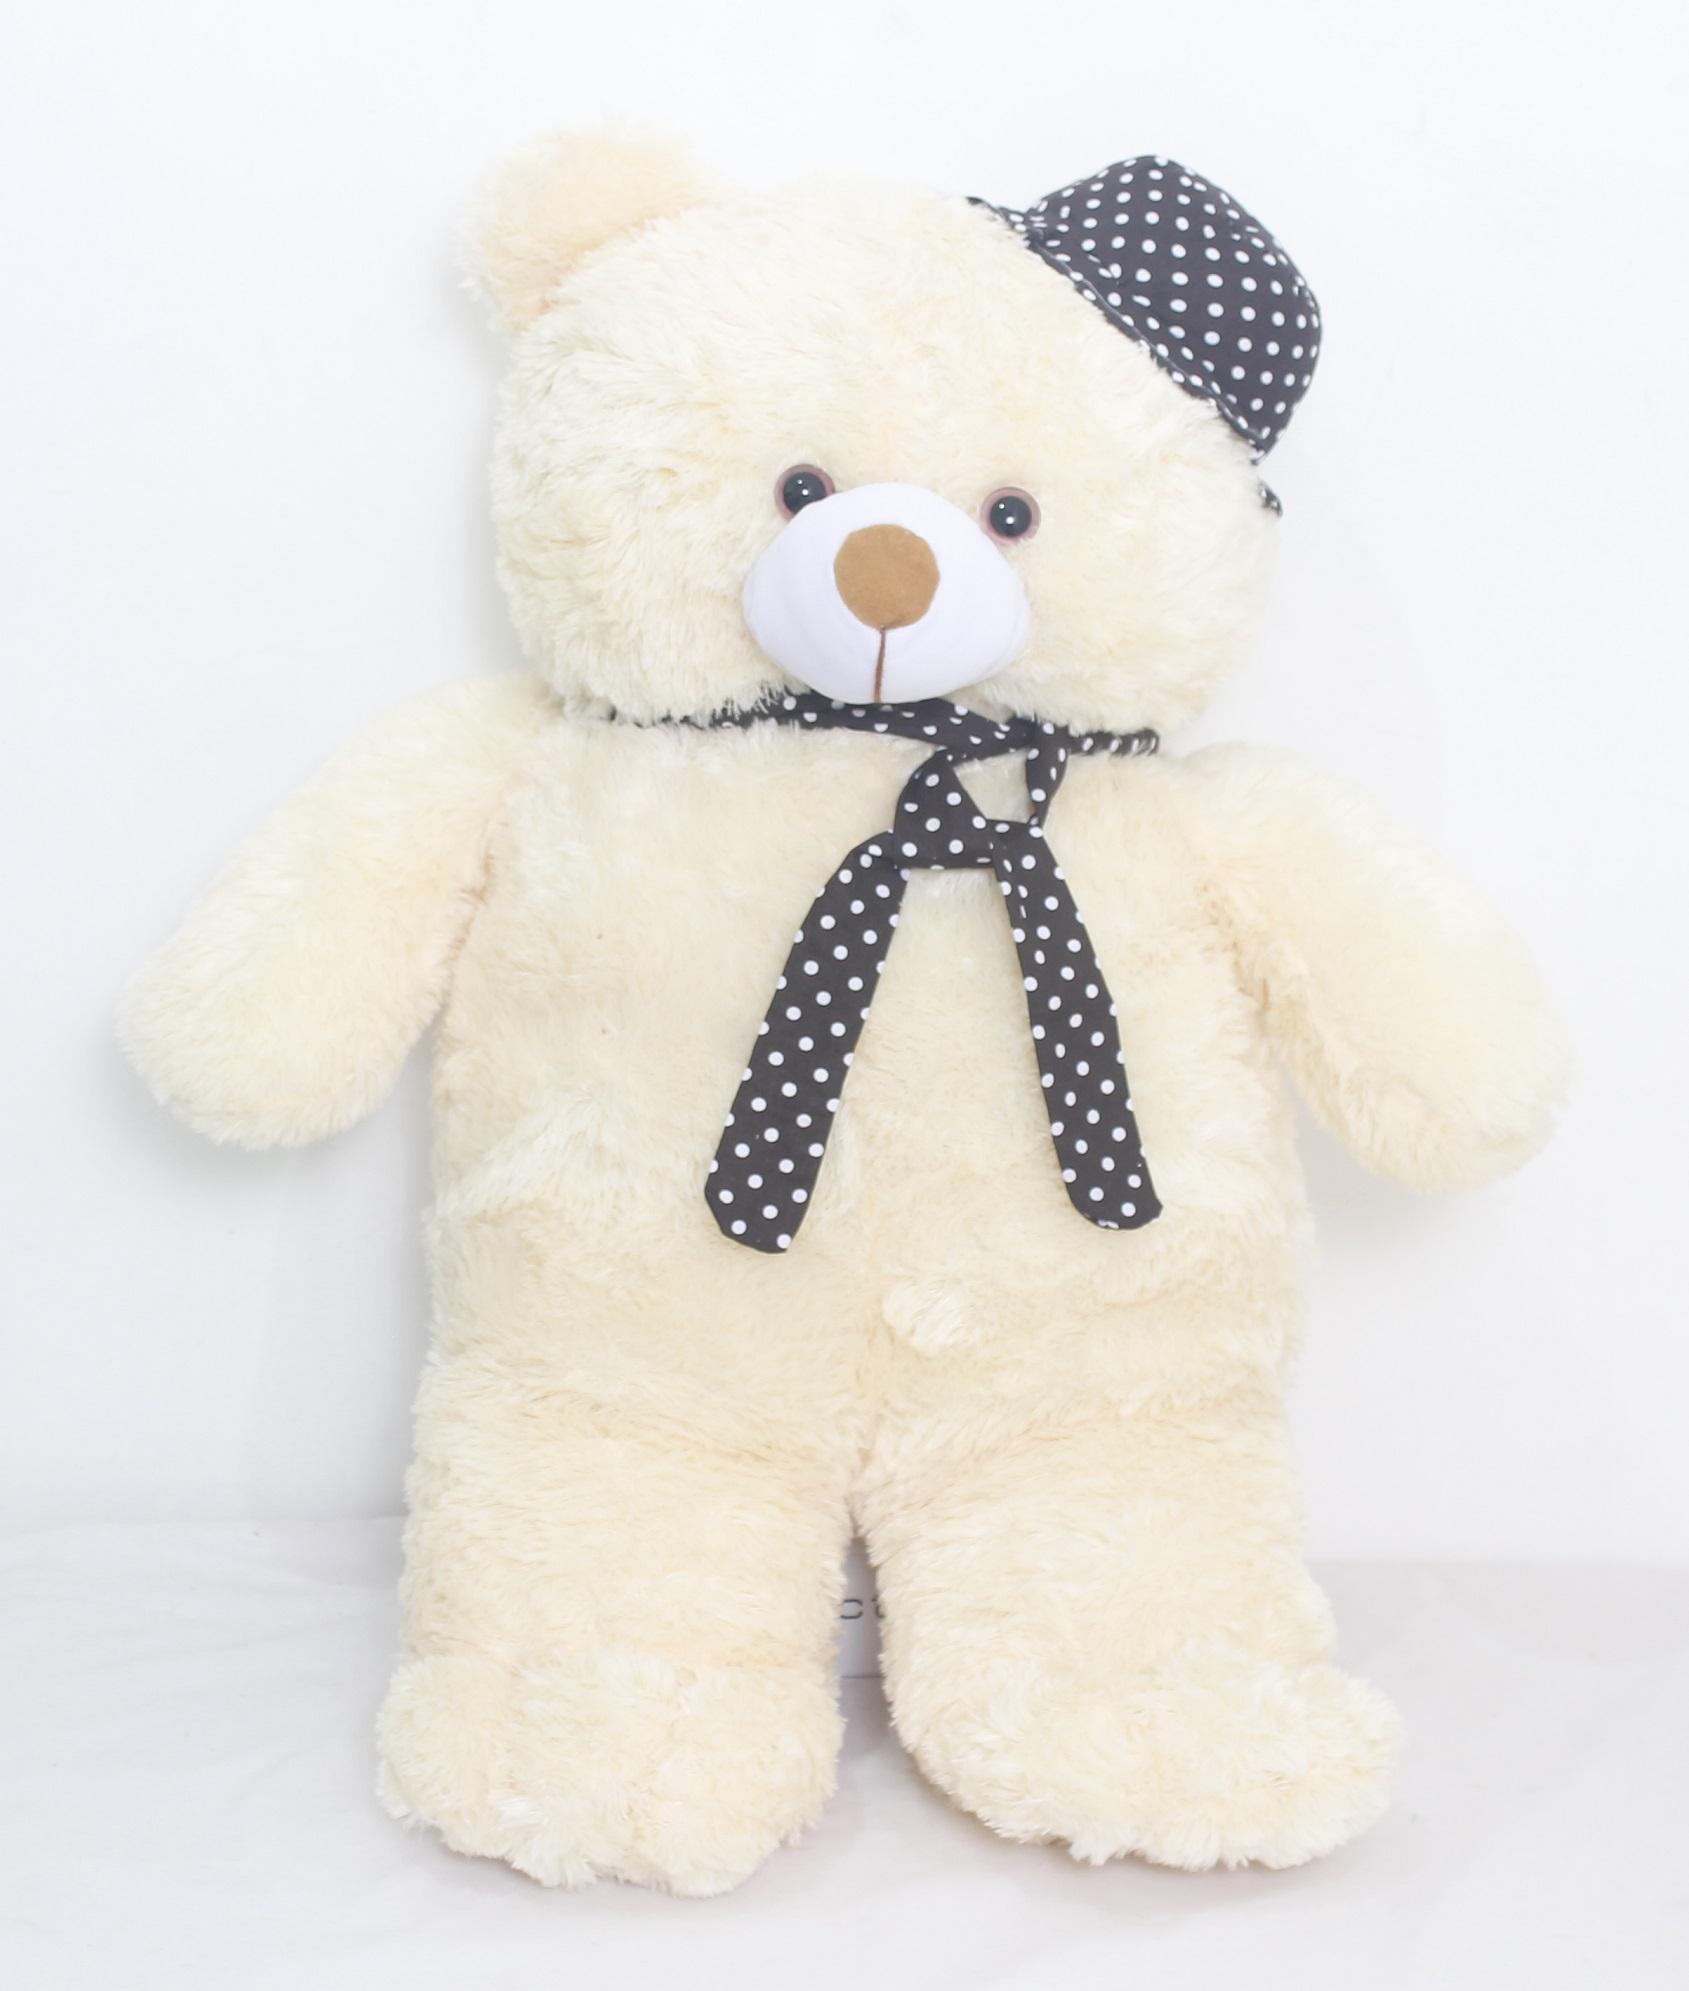 Boneka Teddy Bear Besar Boneka Beruang Cream Topi D167 Lazada